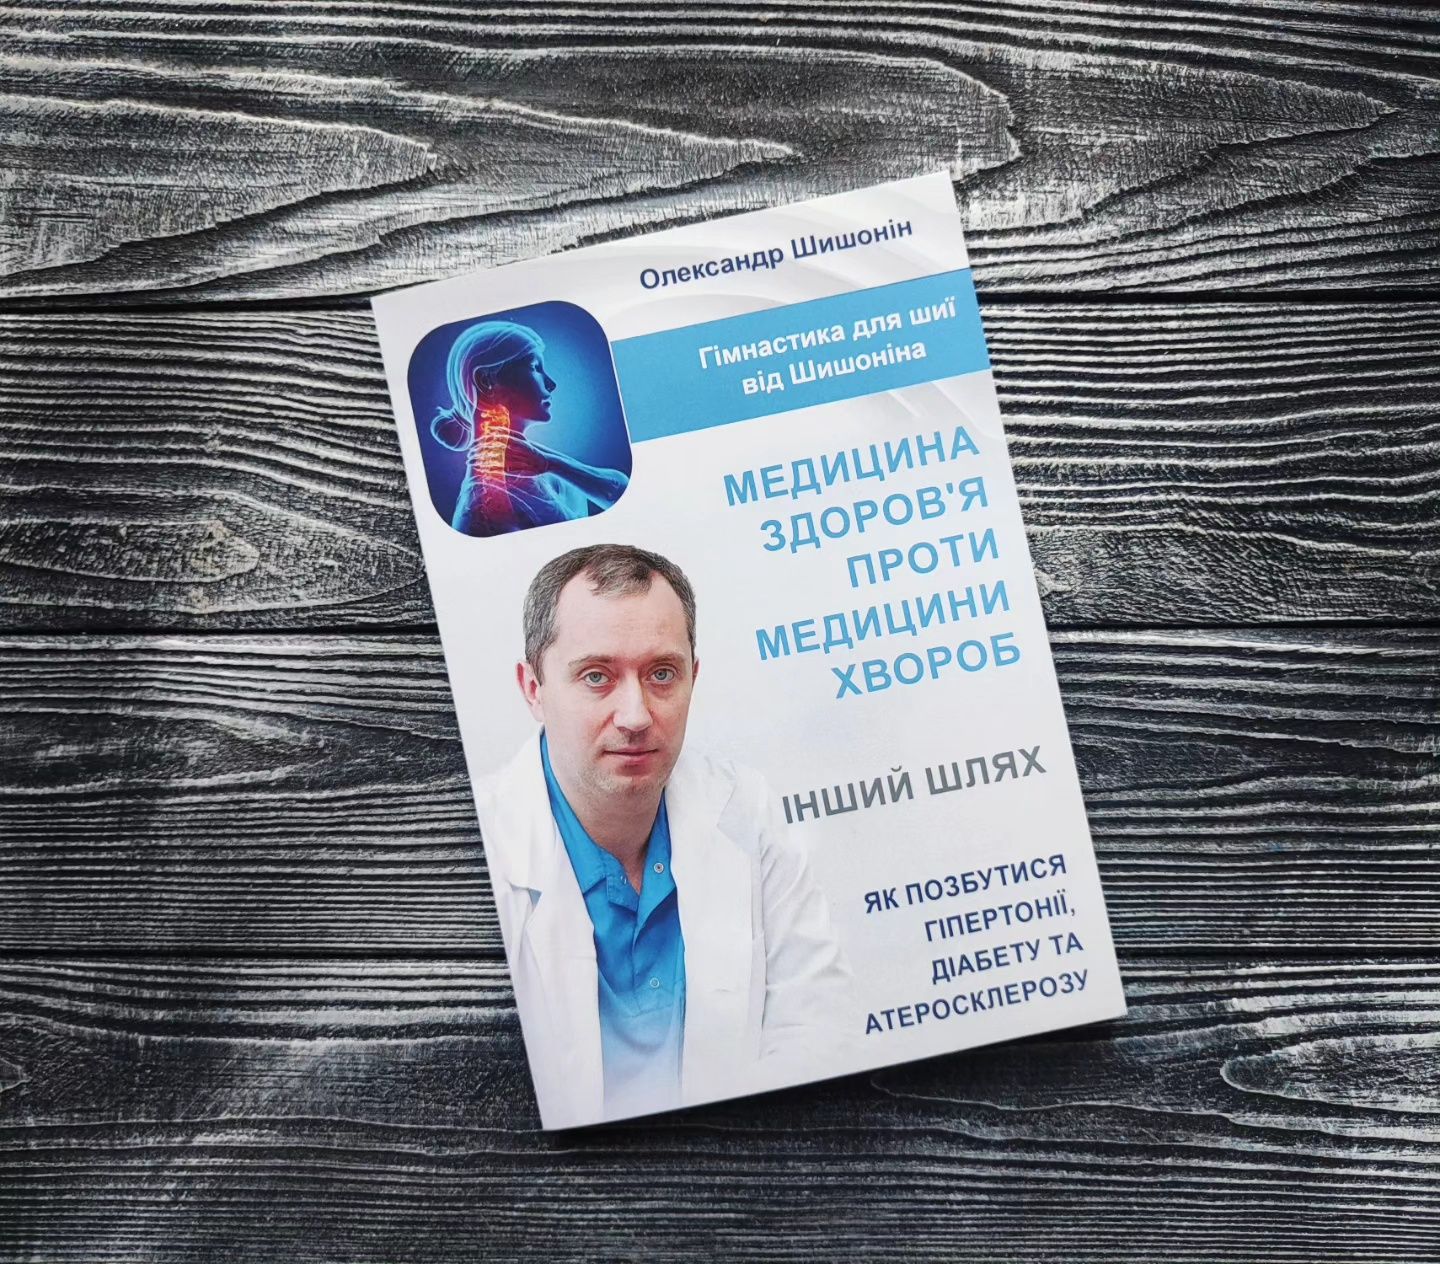 Медицина здоров'я проти медицини хвороб Олександр Шишонін